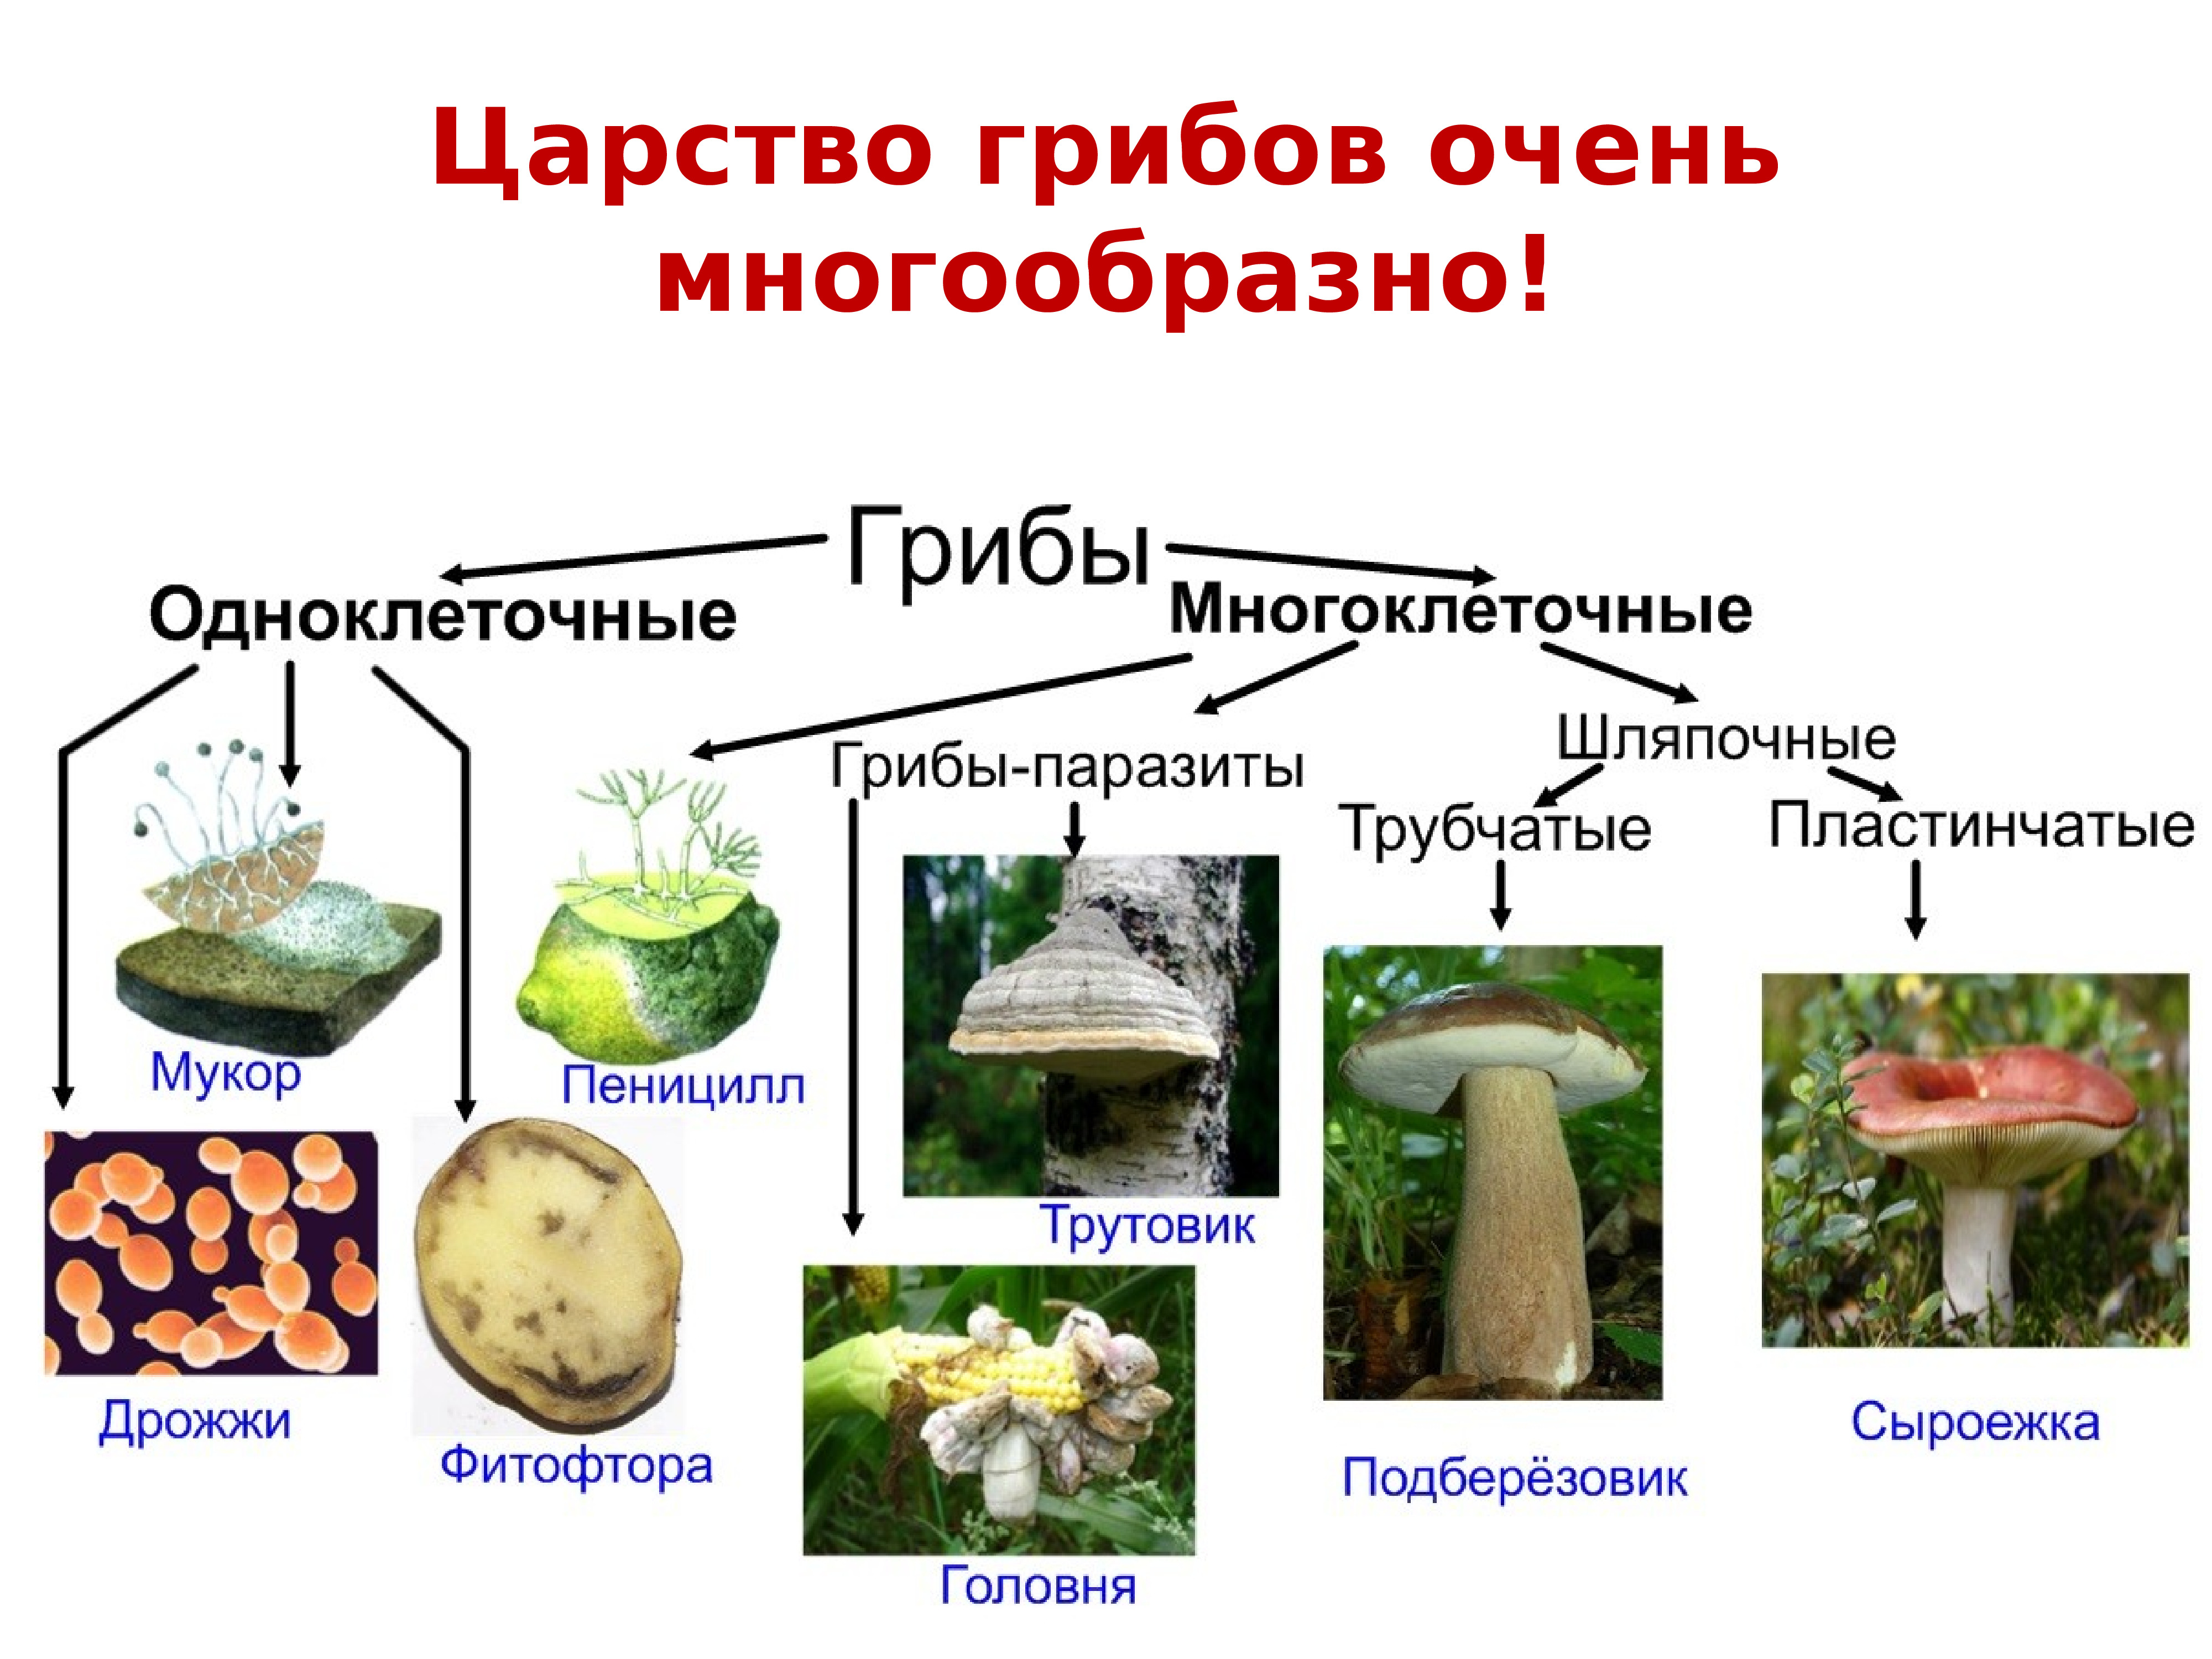 Группы многоклеточных грибов